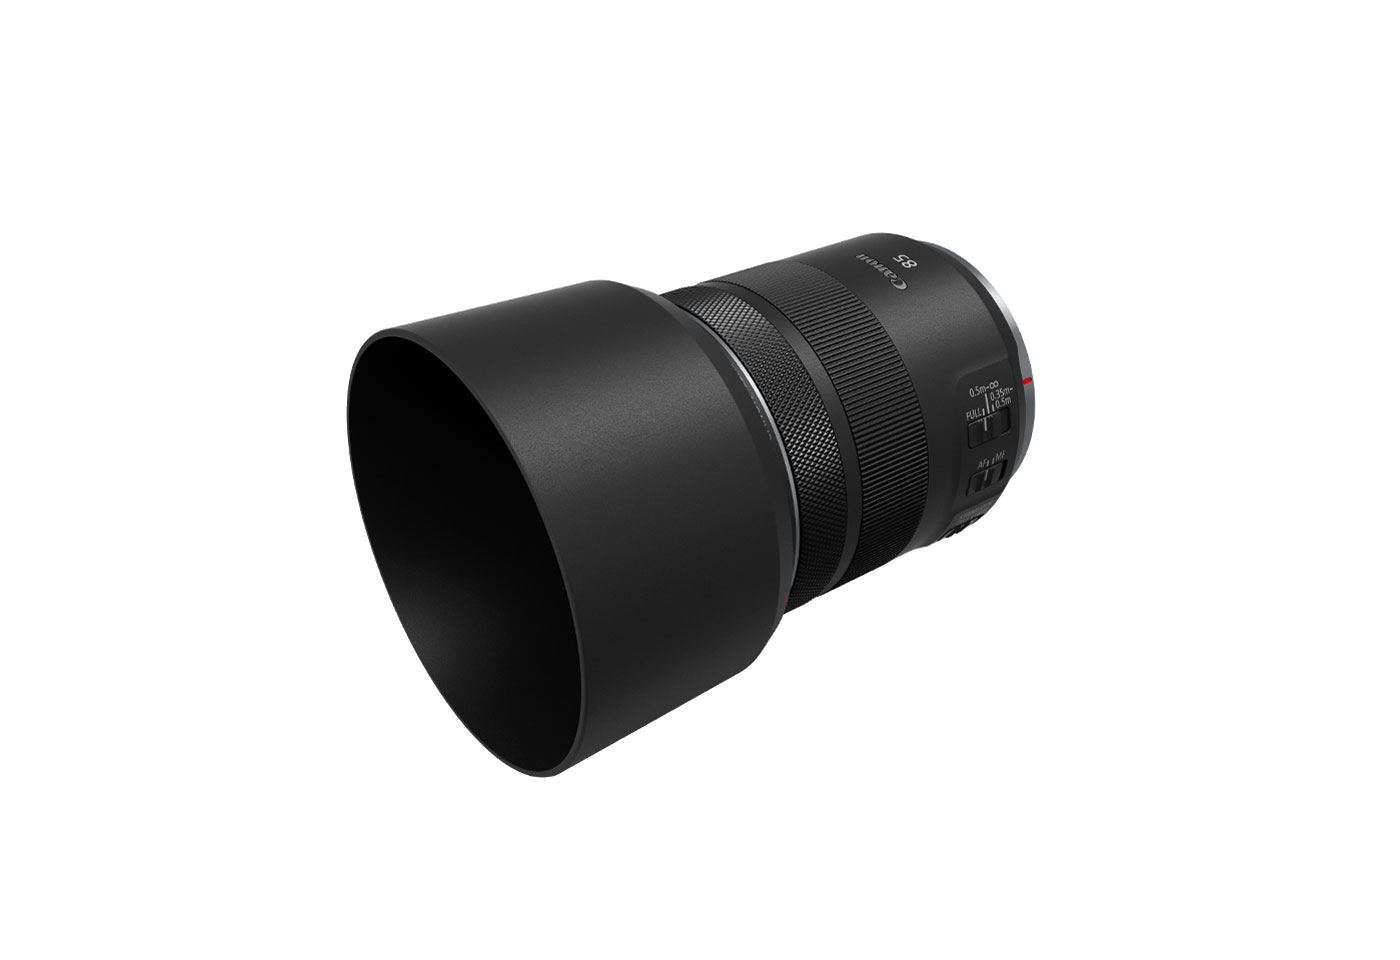 Profile image of RF 85mm f/2 Macro IS STM macro lens with hood